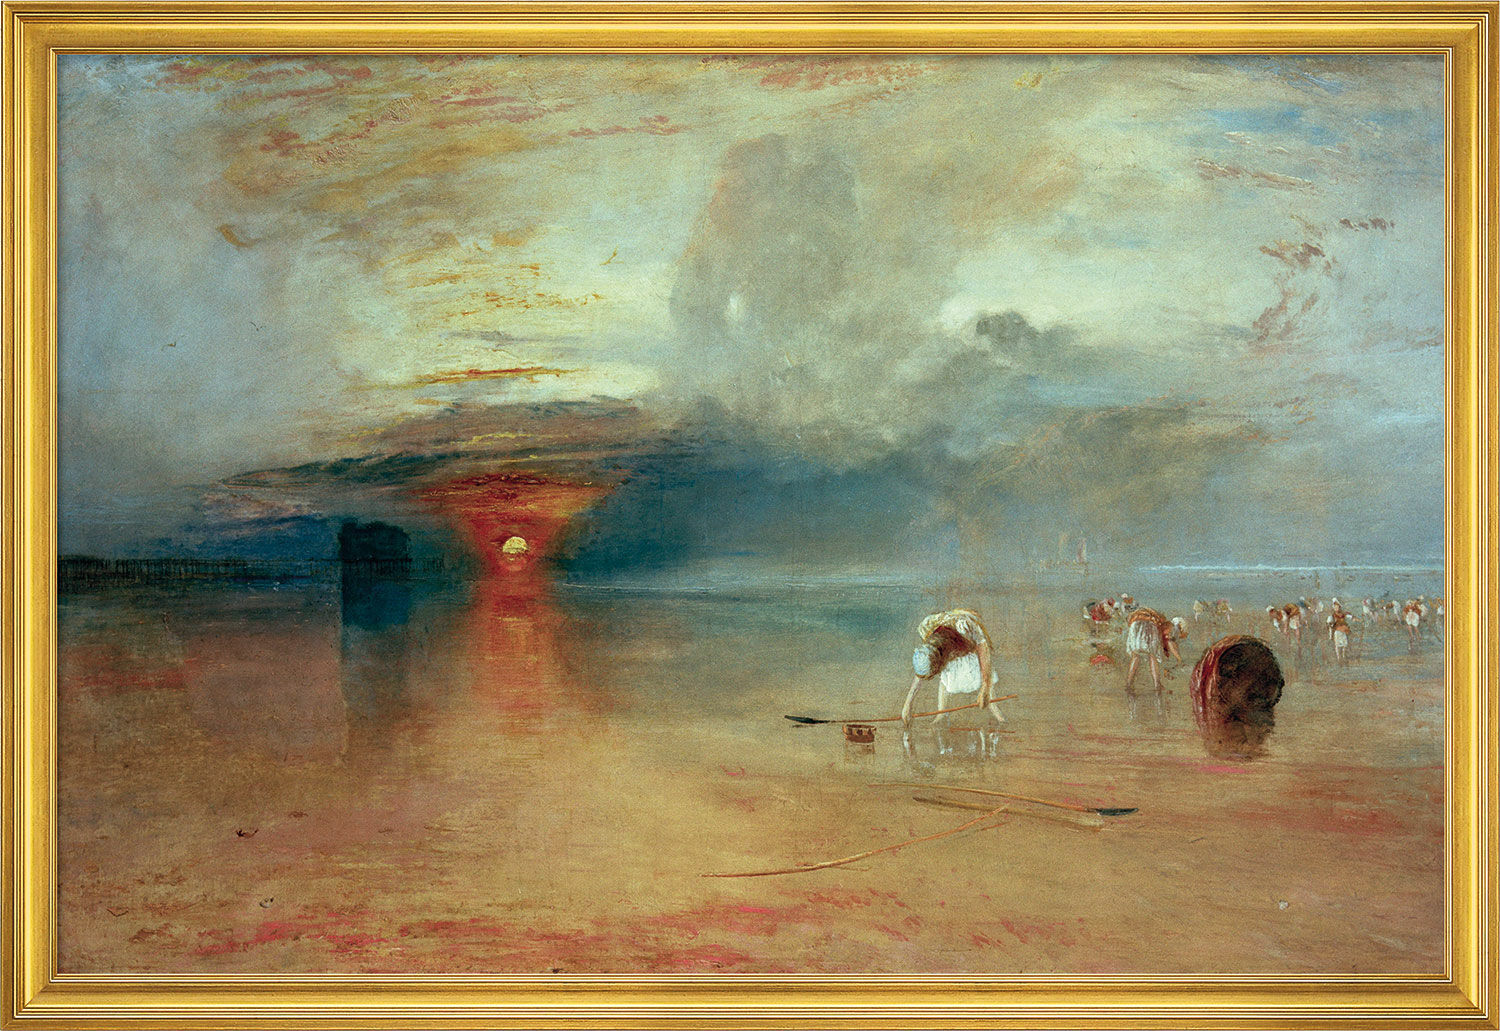 Billede "Calais Beach" (1830), indrammet von William Turner